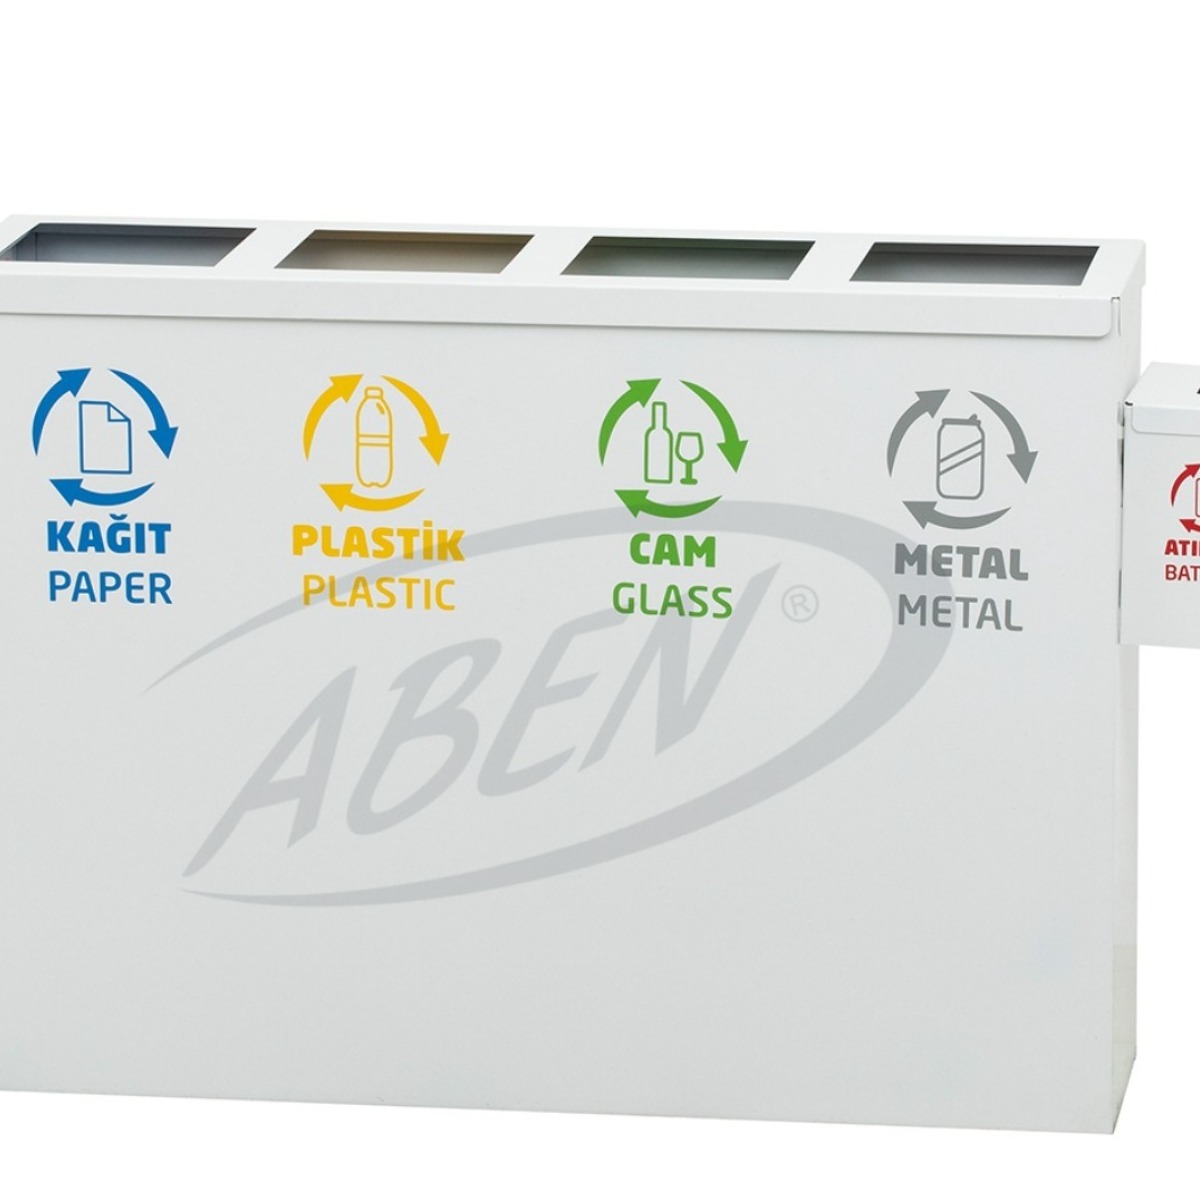 AB-713 4’Part Recycle Bin + Battery Box adlı ürünün logosu